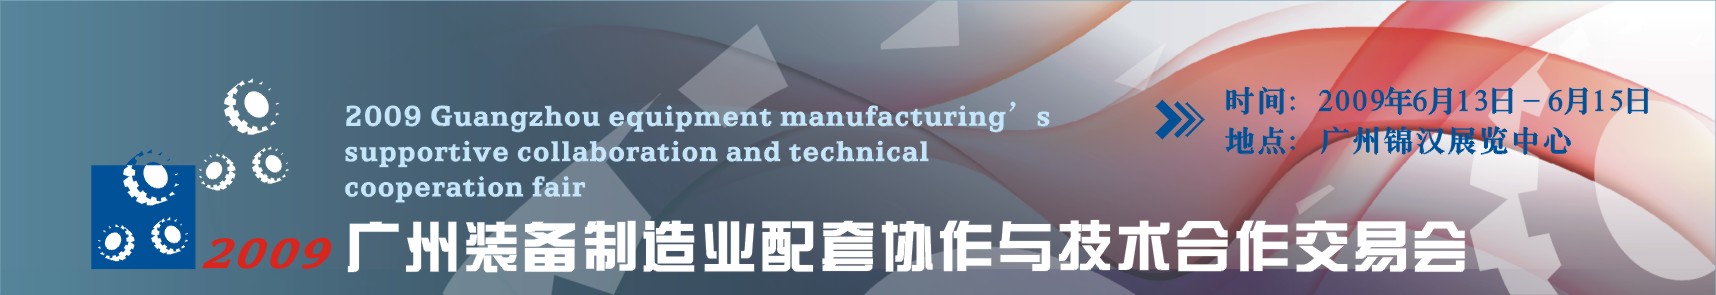 2009广州装备制造业配套协作与技术合作交易会